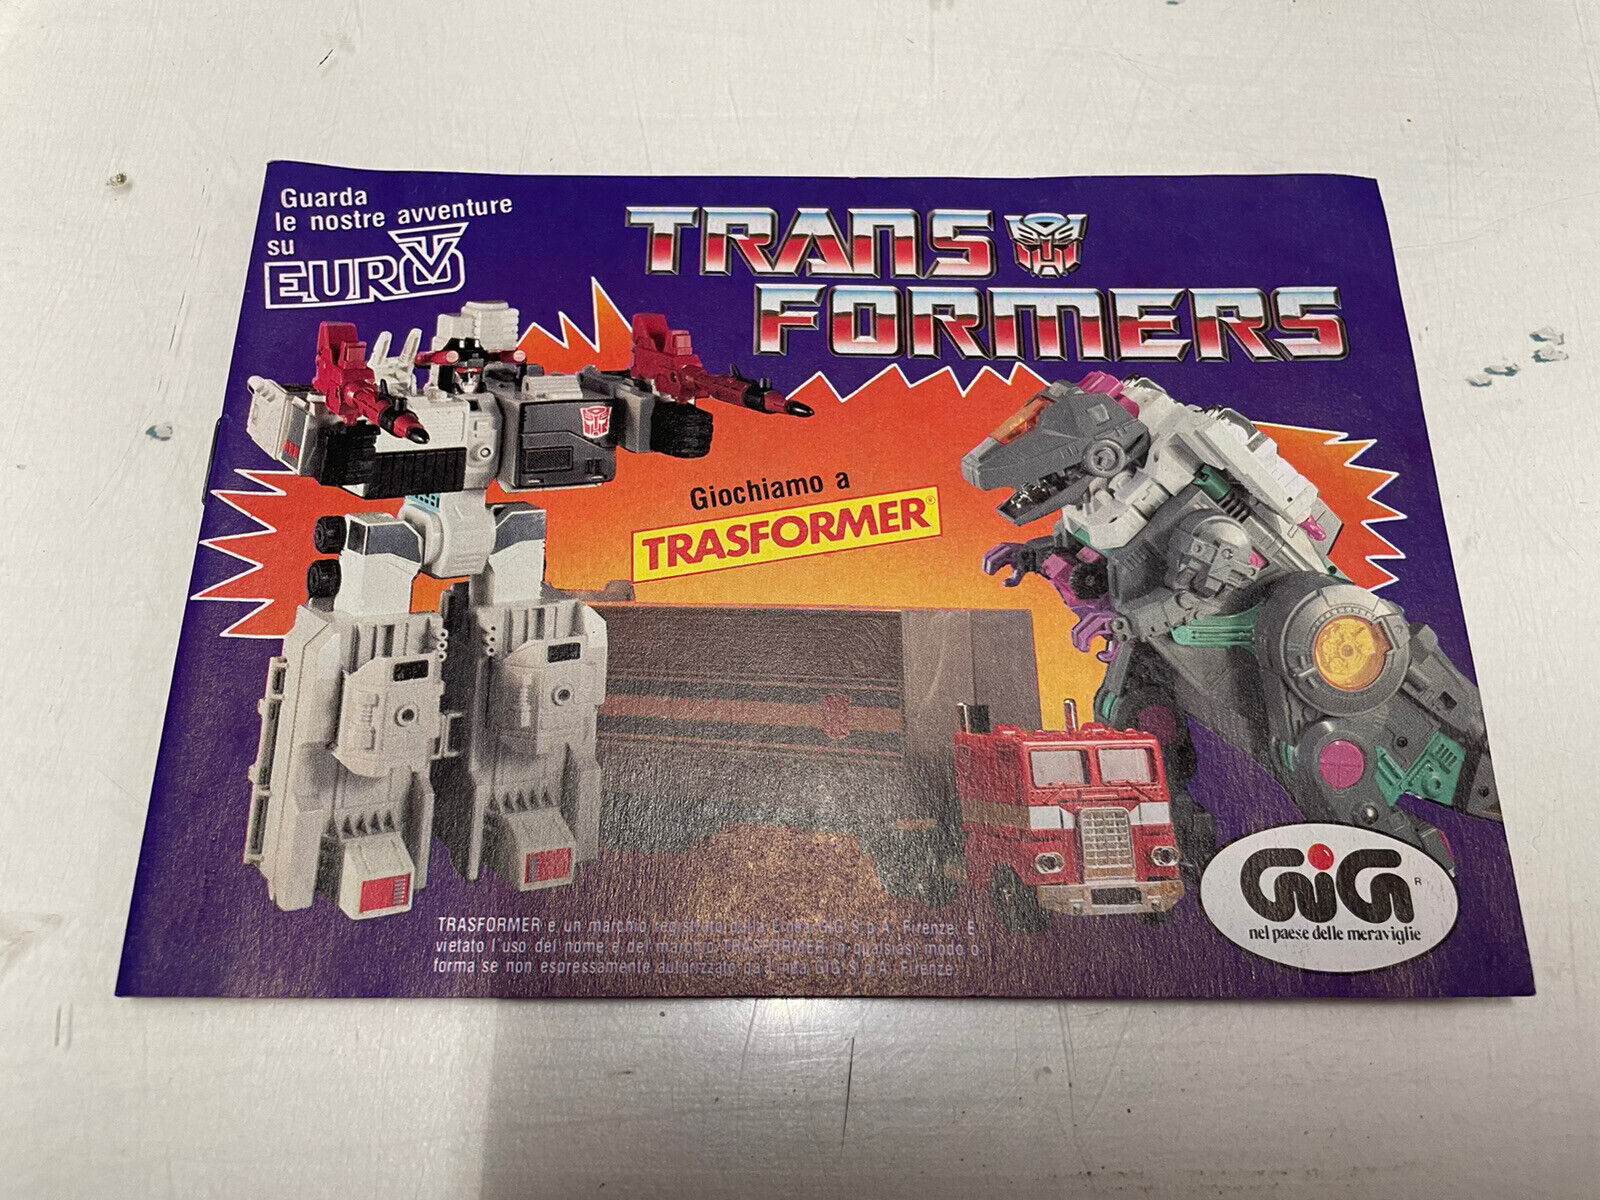 Transformers-catalogo-Anni-80-GIG-Giochiamo-a-Trasformer-145340679071